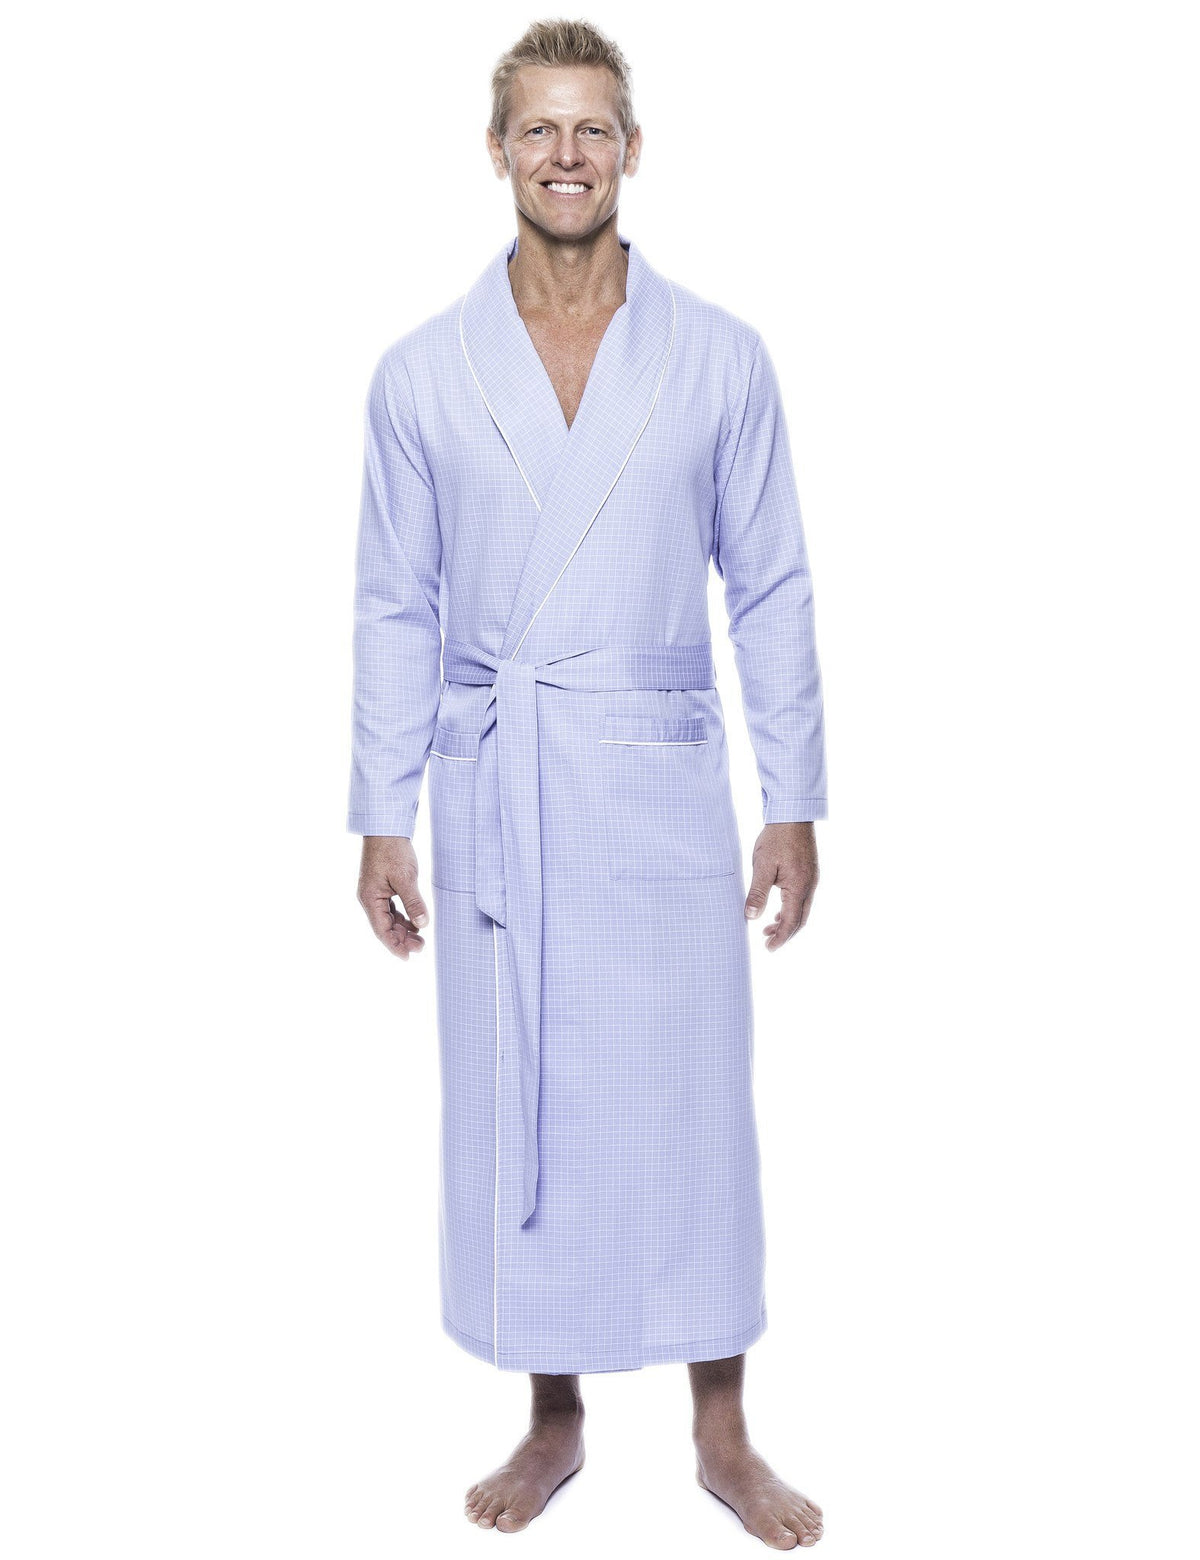 Men's 100% Woven Cotton Robe - Micro Checks Light Blue